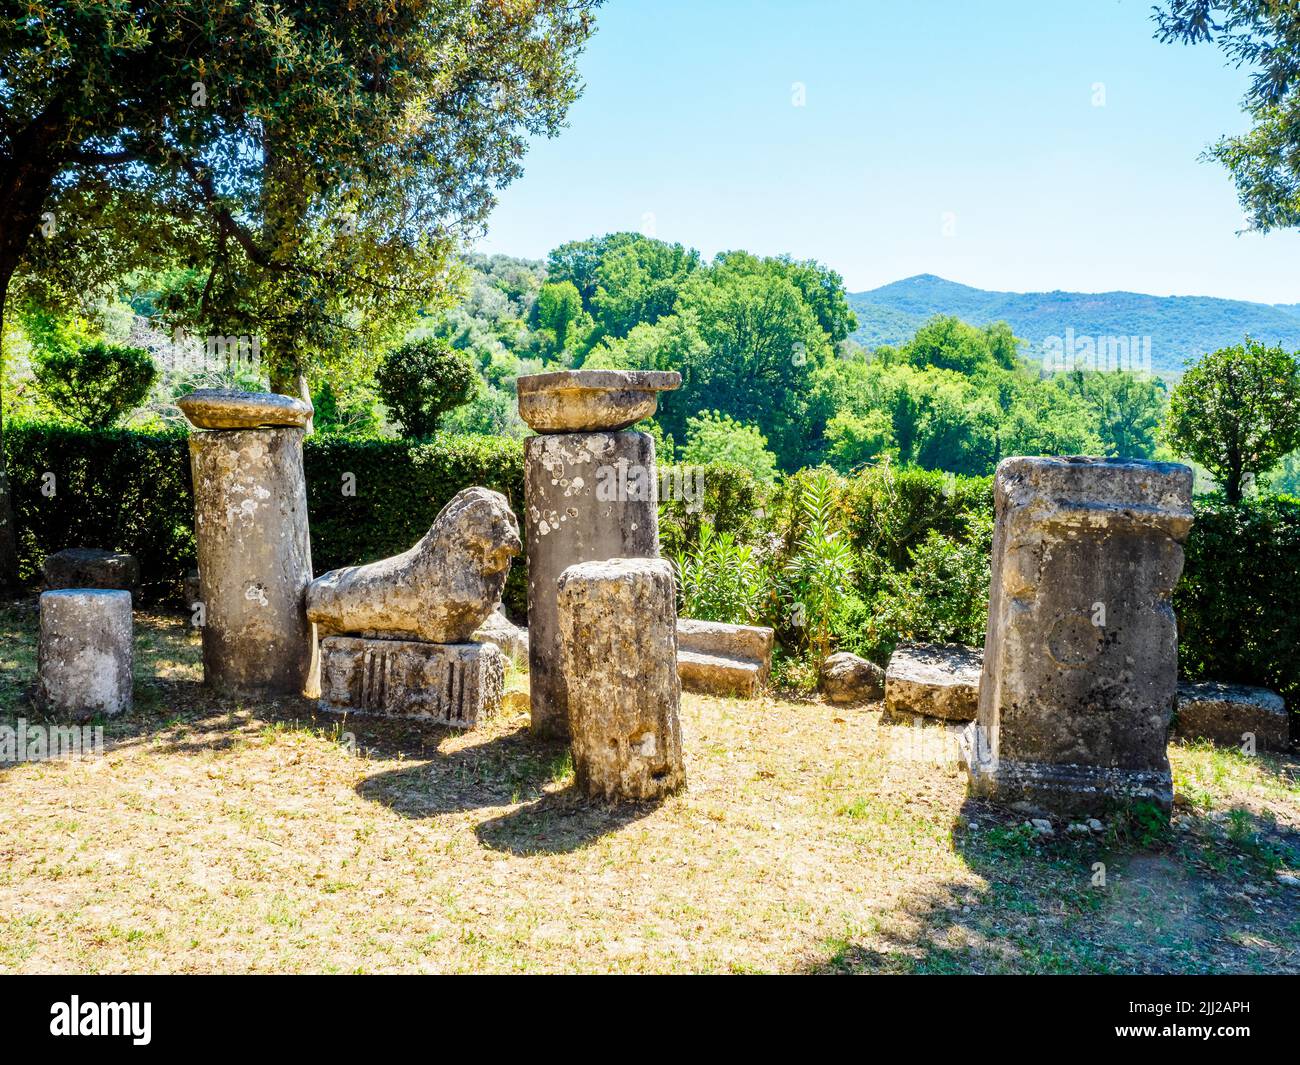 Antiguas ruinas romanas en el jardín del Santuario de Santa Vittoria - Monteleone Sabino, Rieti, Italia Foto de stock